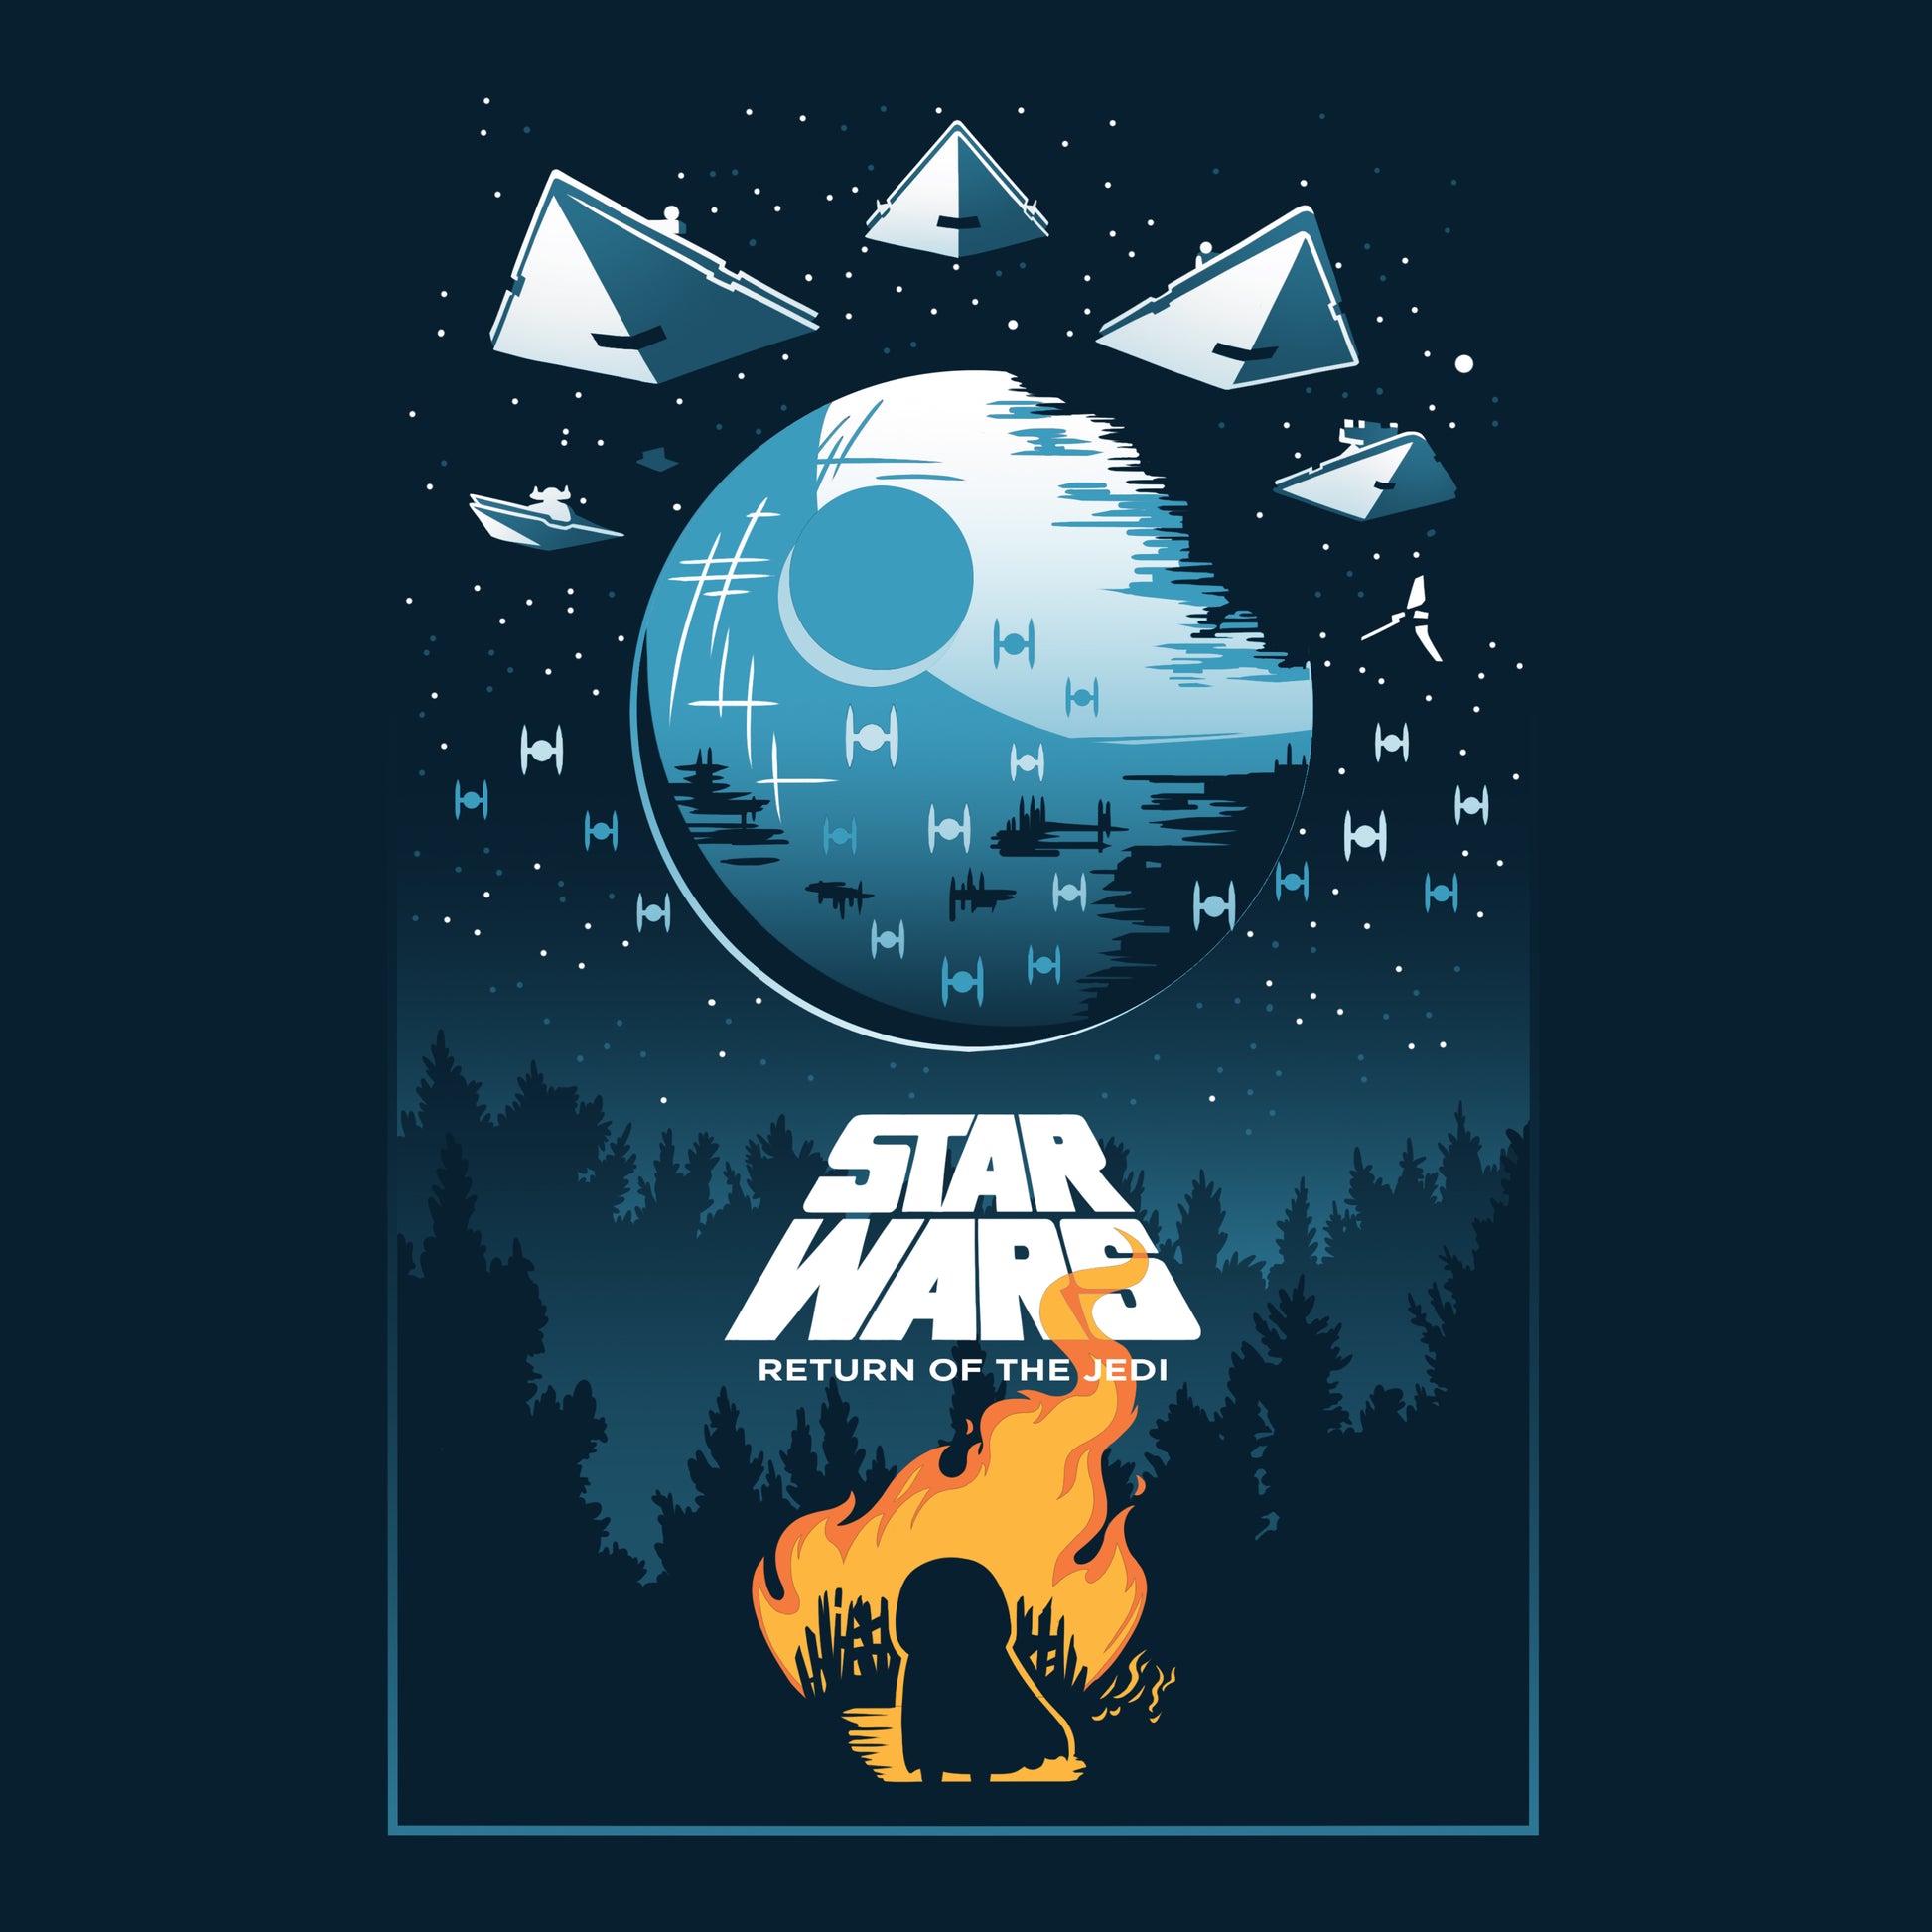 Star Wars: Return Of The Jedi Death Star Poster.